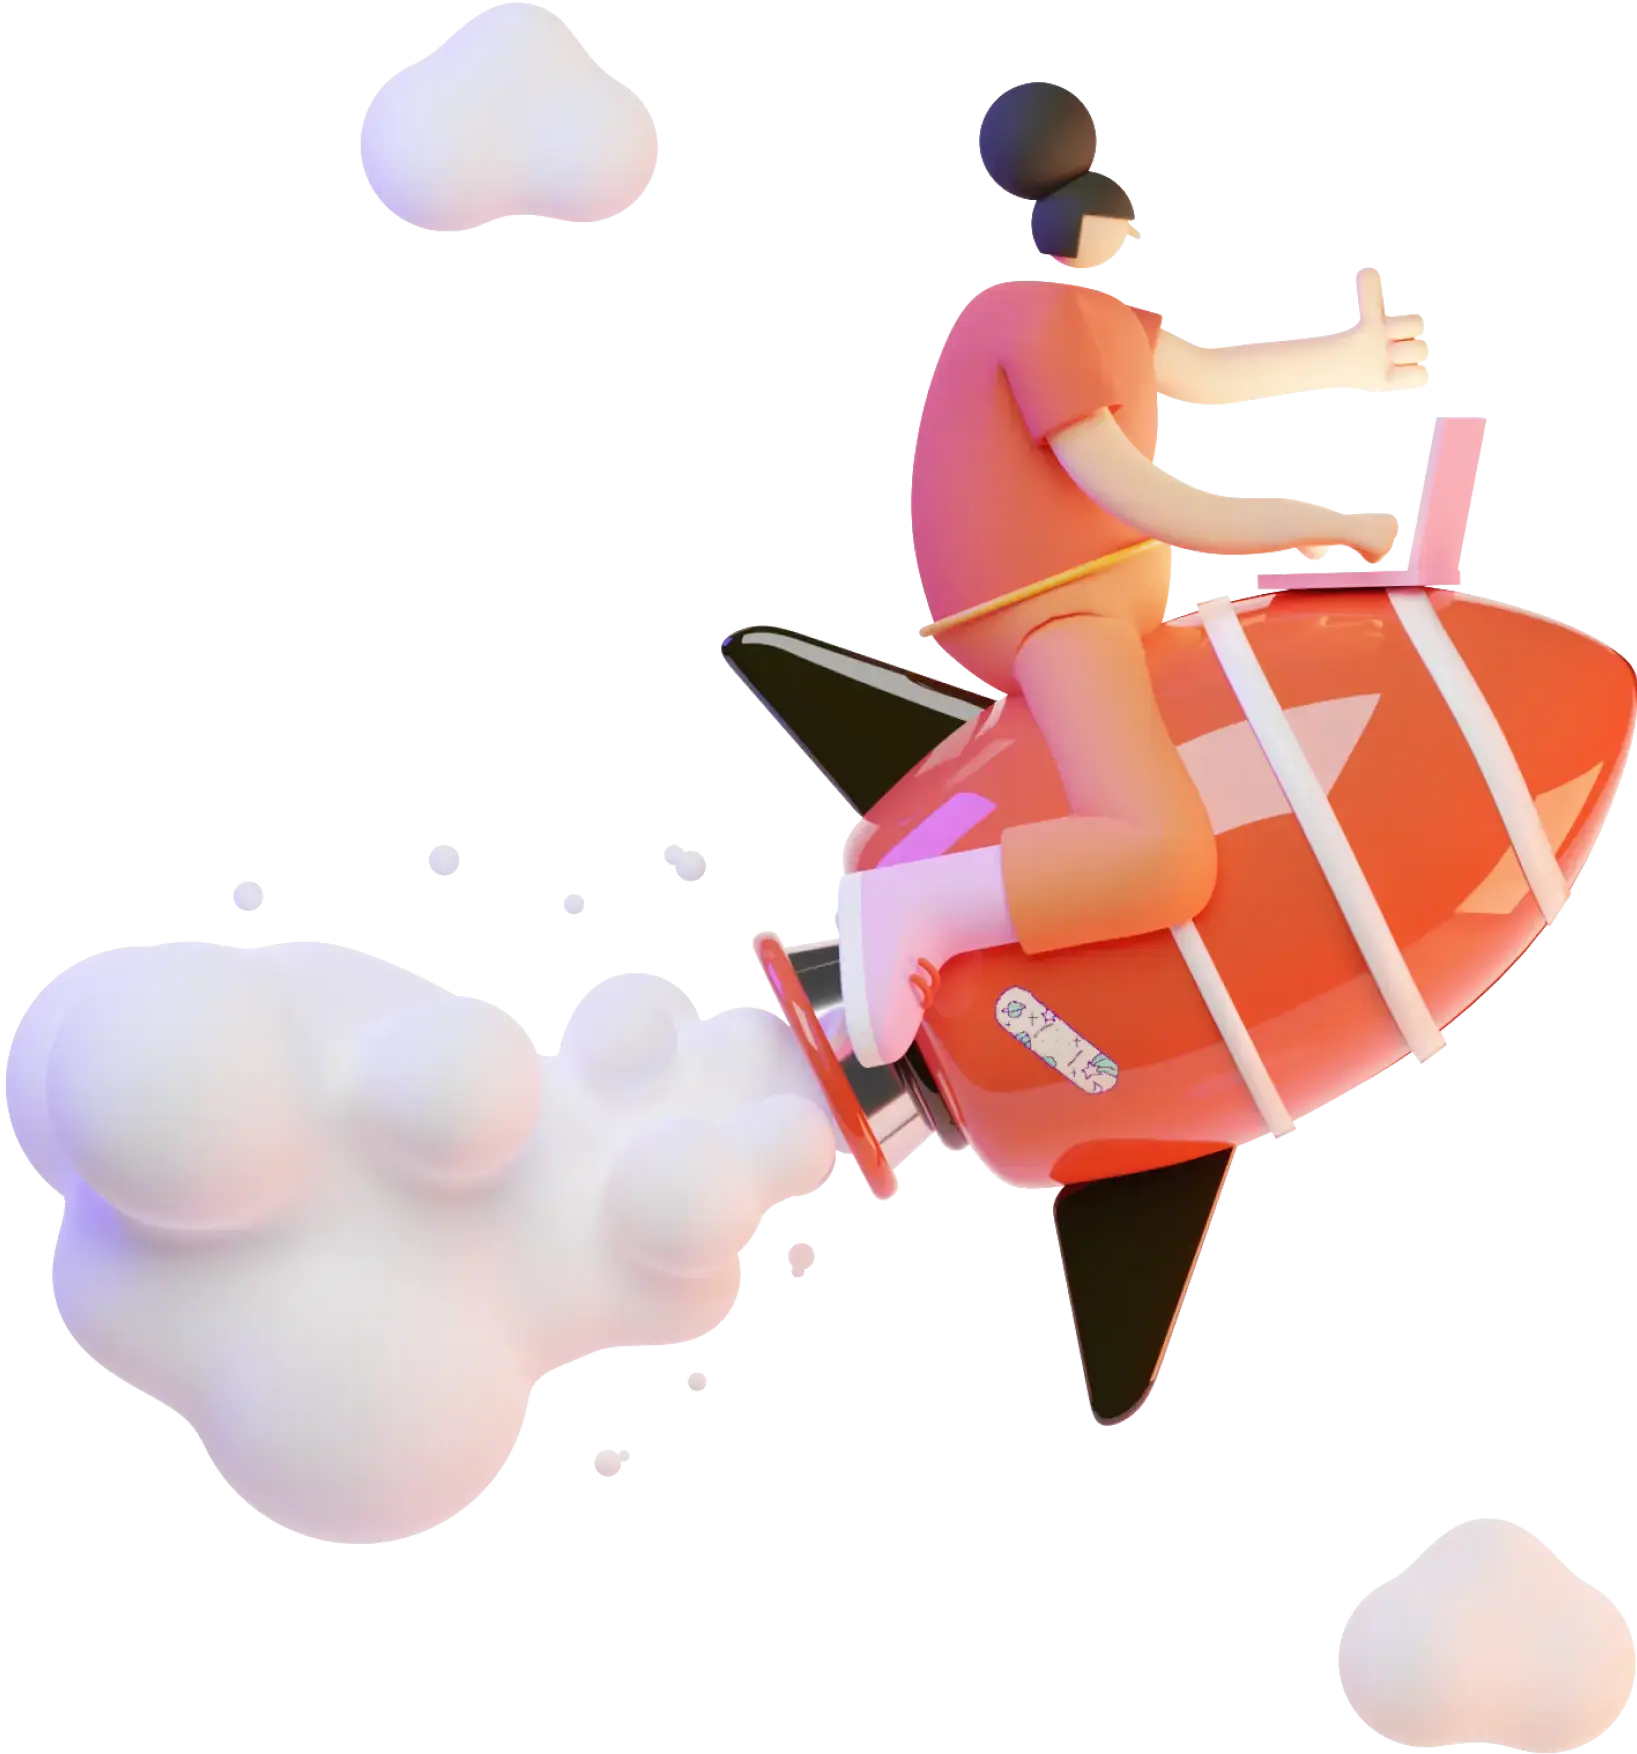 3D girl on a rocket